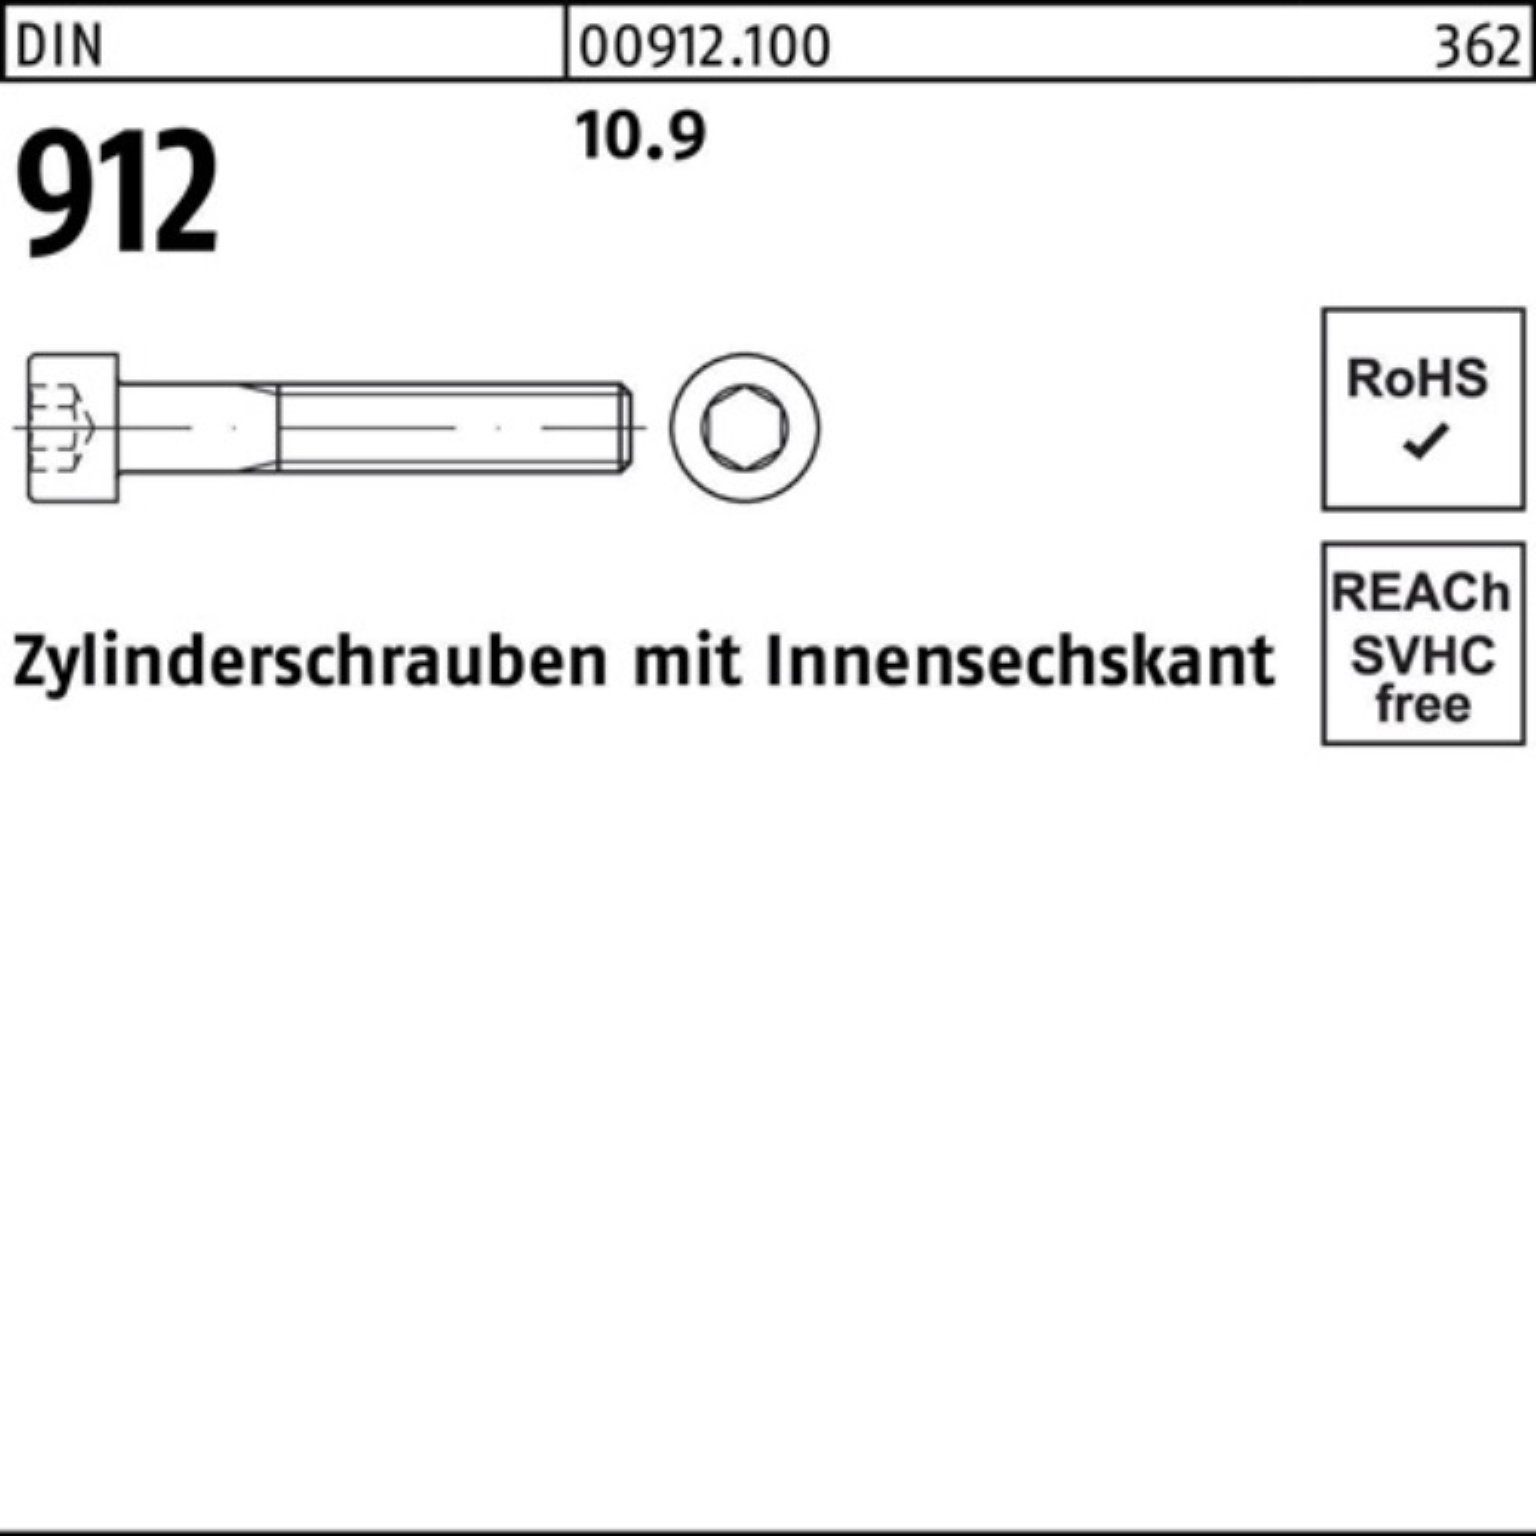 Reyher Zylinderschraube 100er 912 DIN Zylinderschraube Pack 10.9 Stück 1 170 M33x Innen-6kt D